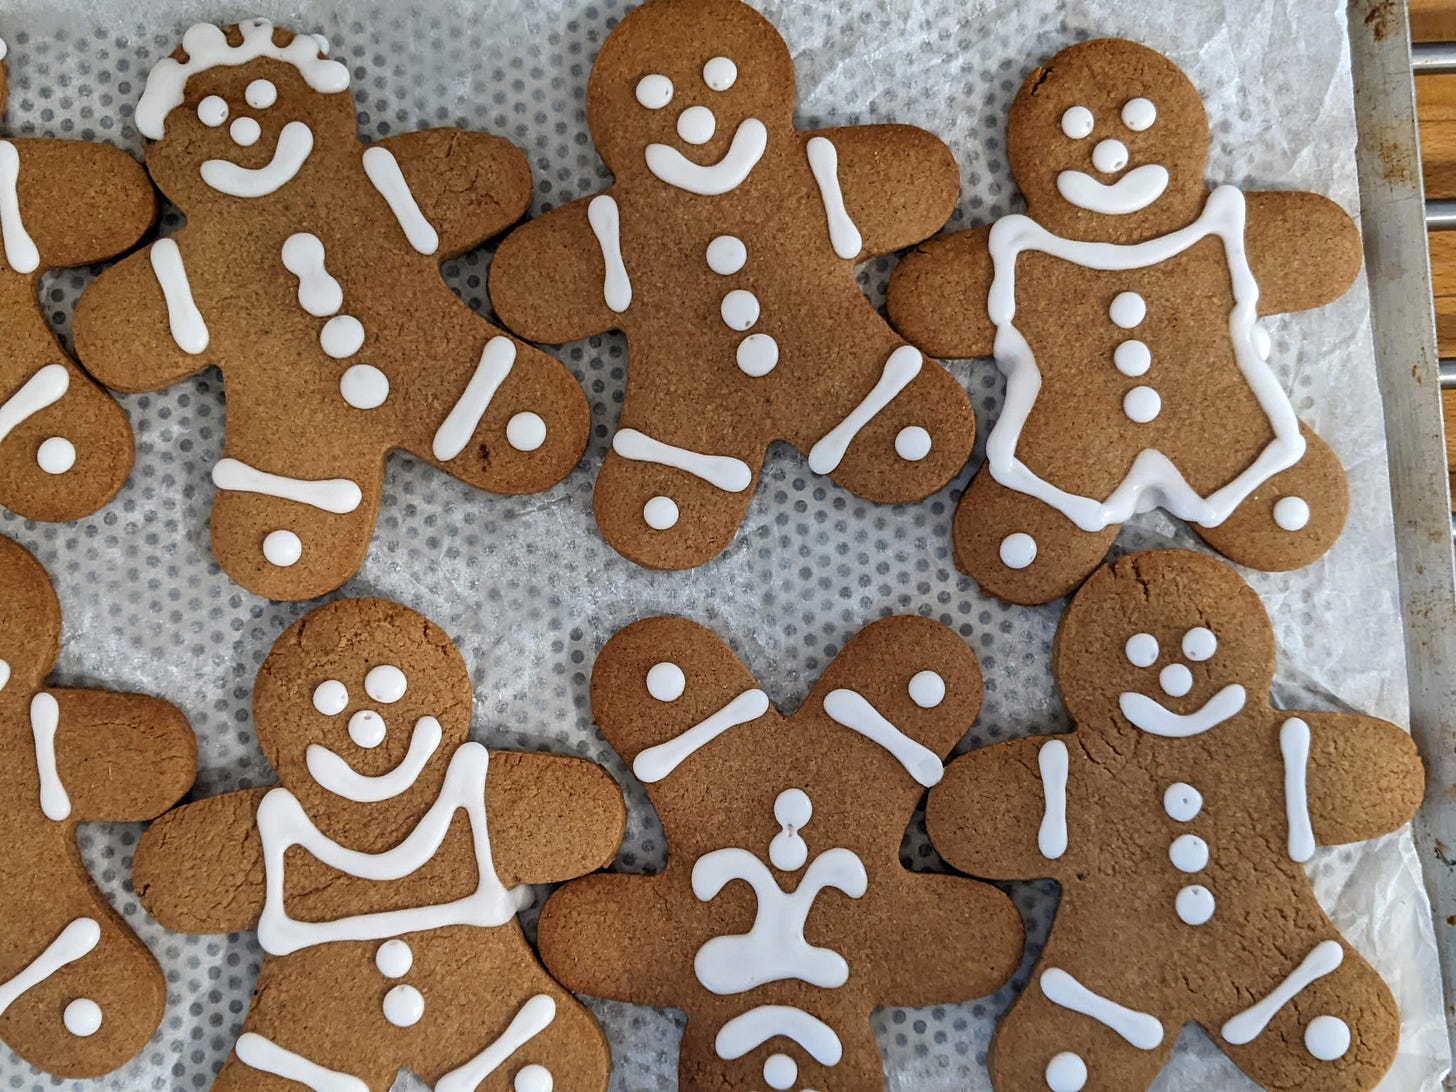 Gingerbread men and women cookies